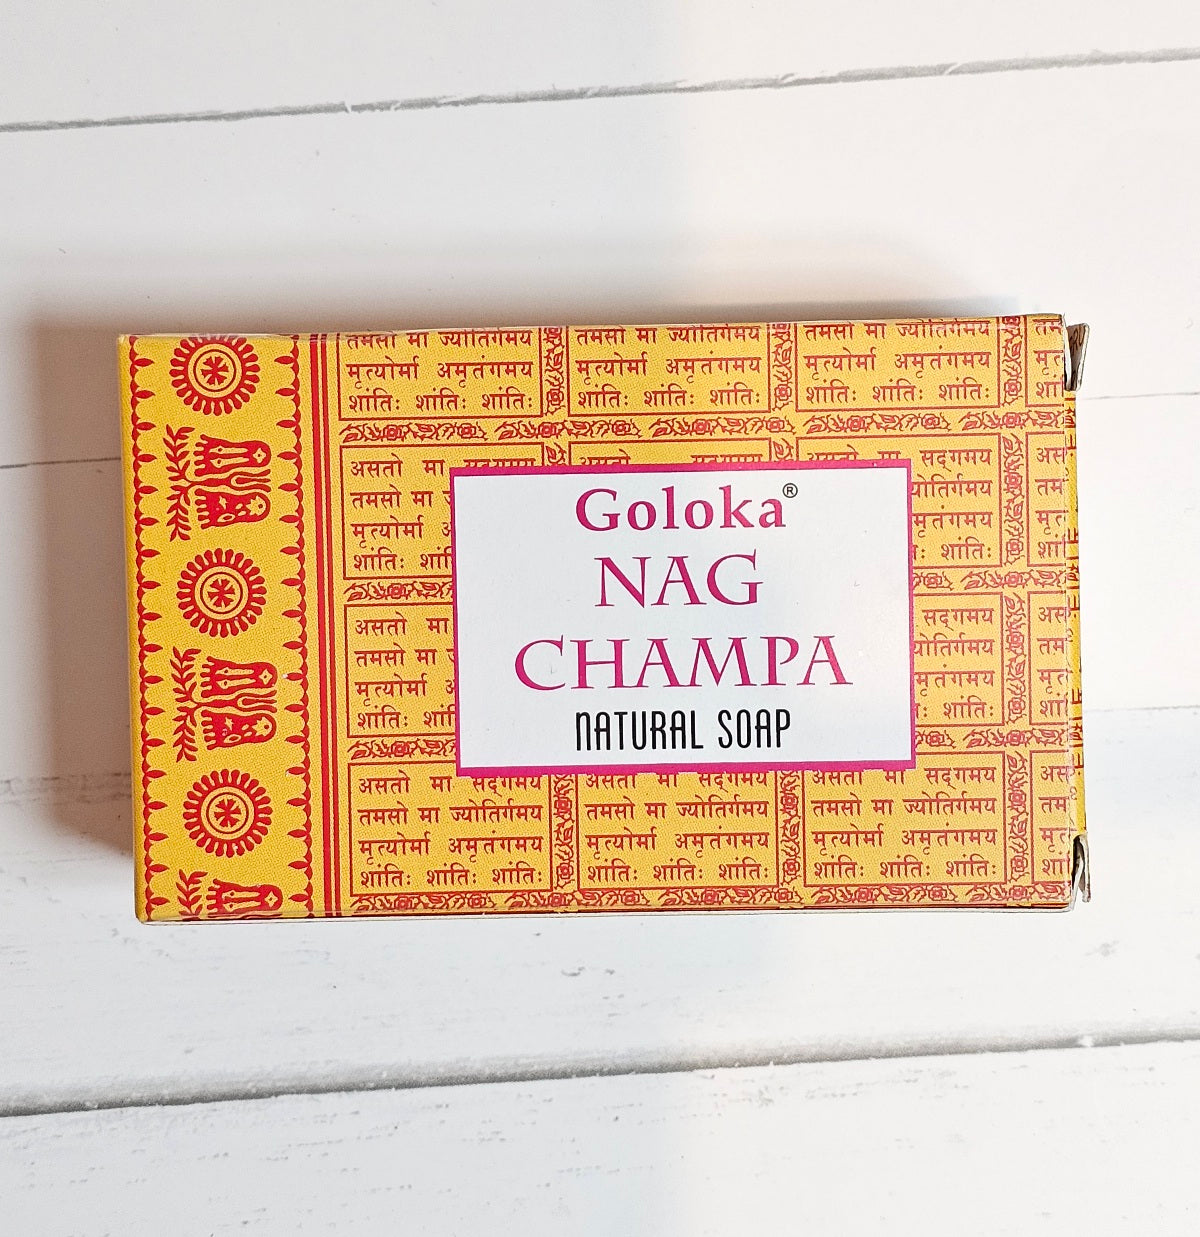 Goloka Nag Champa Natural Soap